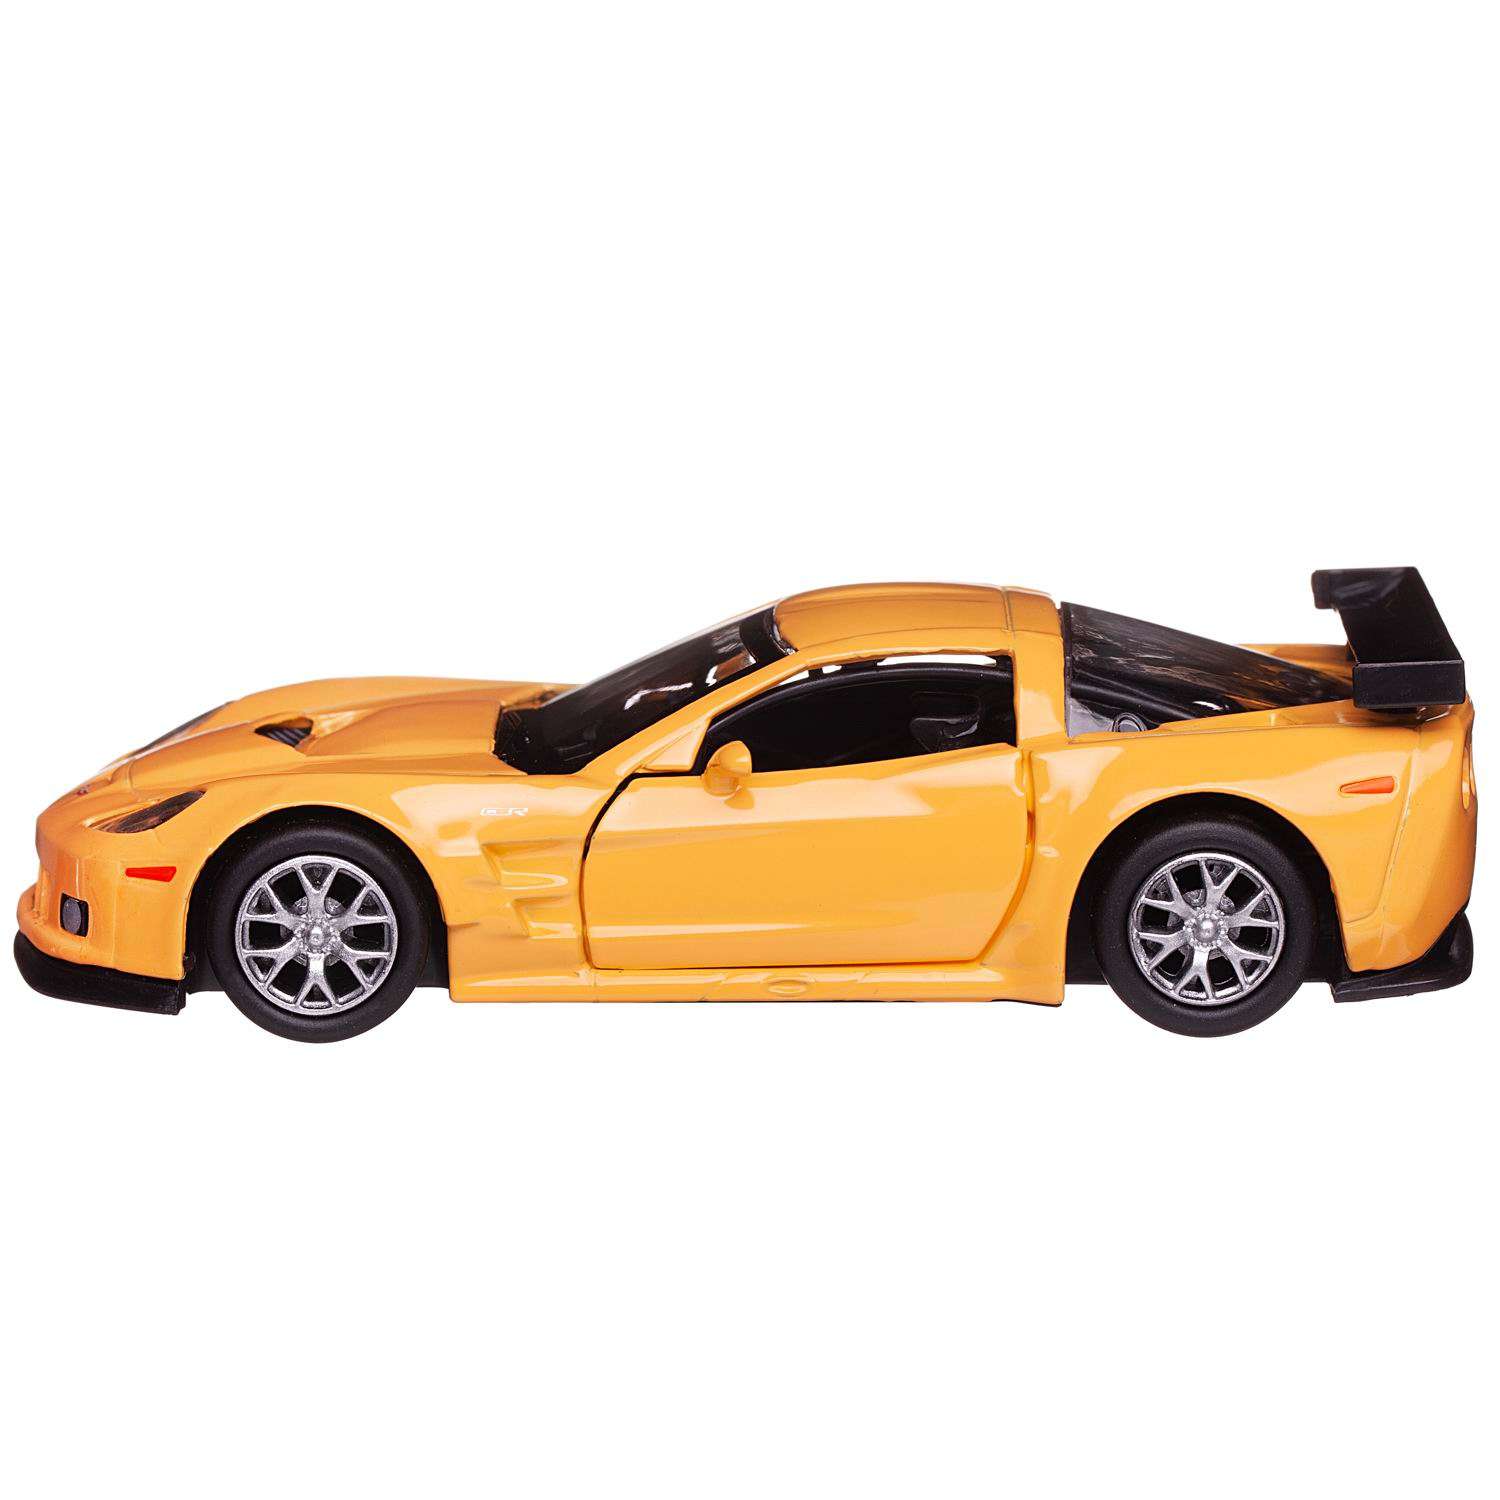 Машина металлическая Uni-Fortune Chevrolet Corvette C6 R желтый цвет двери открываются 554003-YL - фото 1